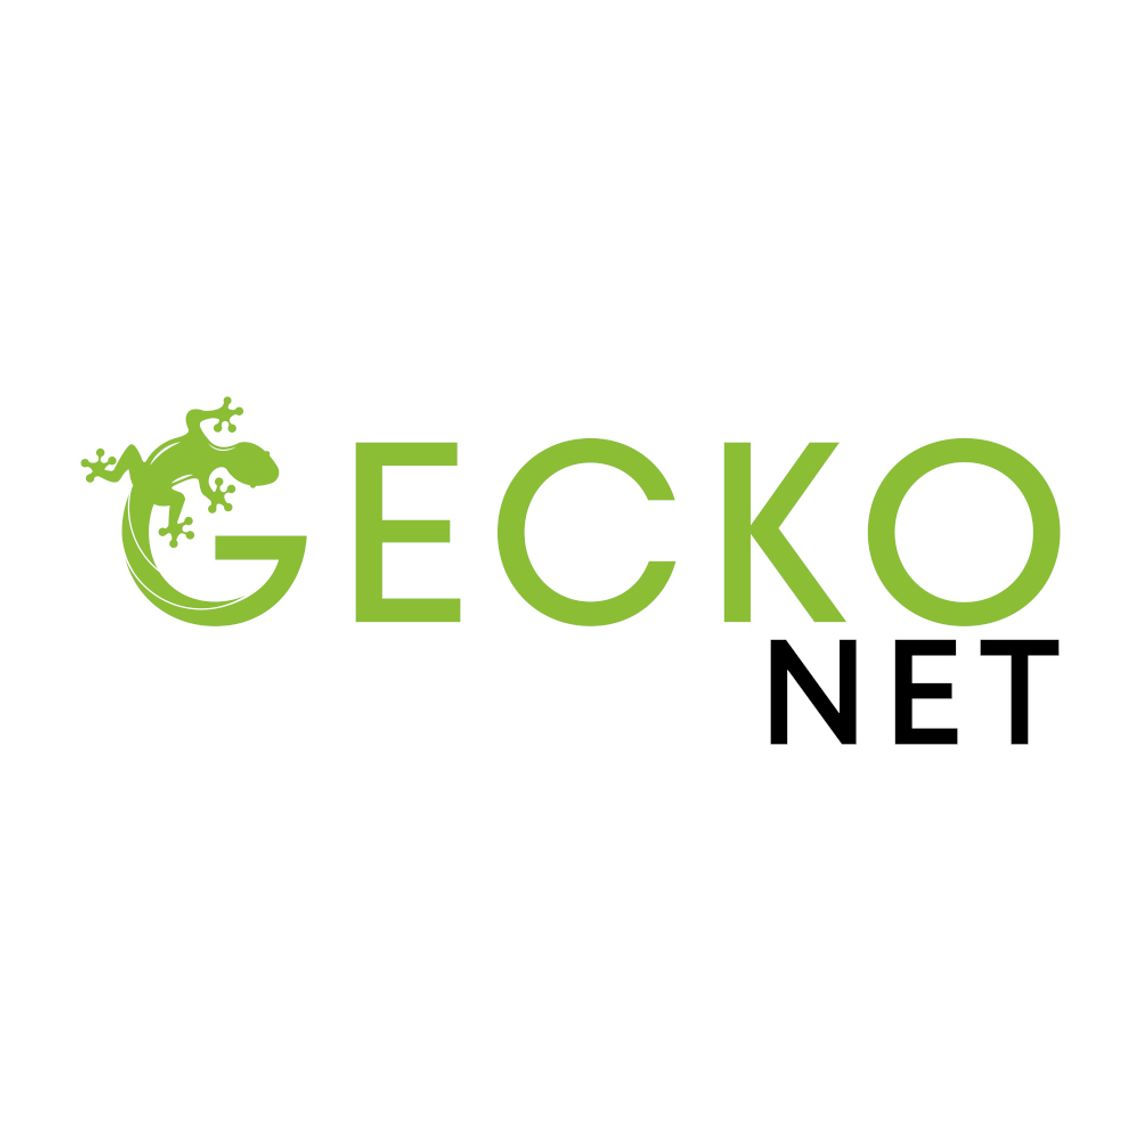 Geckonet sp. z o.o.